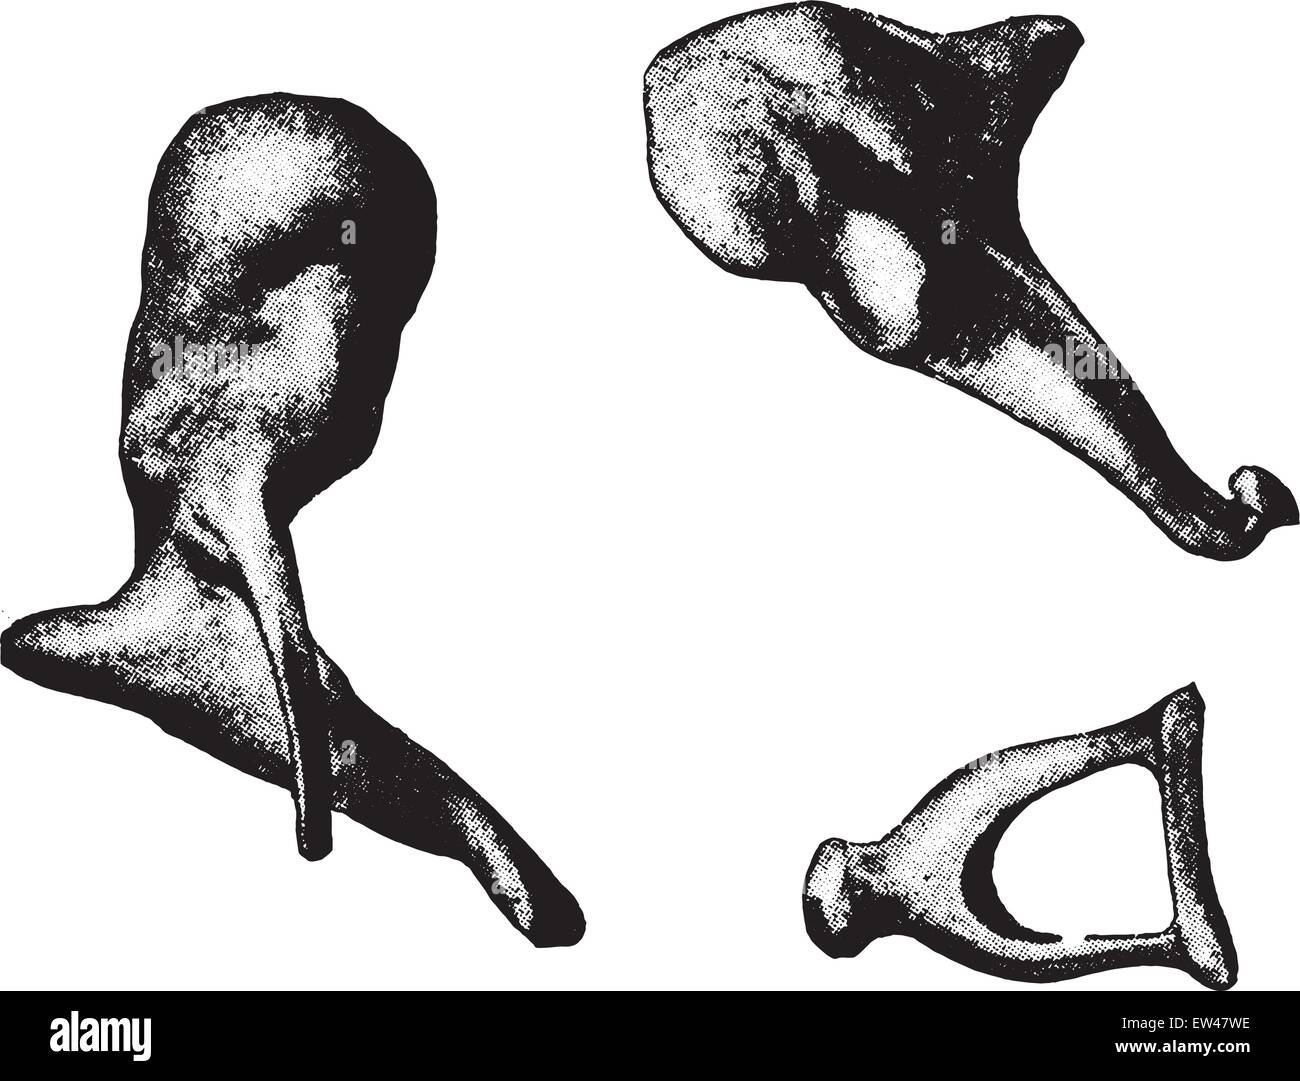 bestøver filosof Konvention Bones of ear- hammer, anvil, stirrup, vintage engraved illustration Stock  Vector Image & Art - Alamy